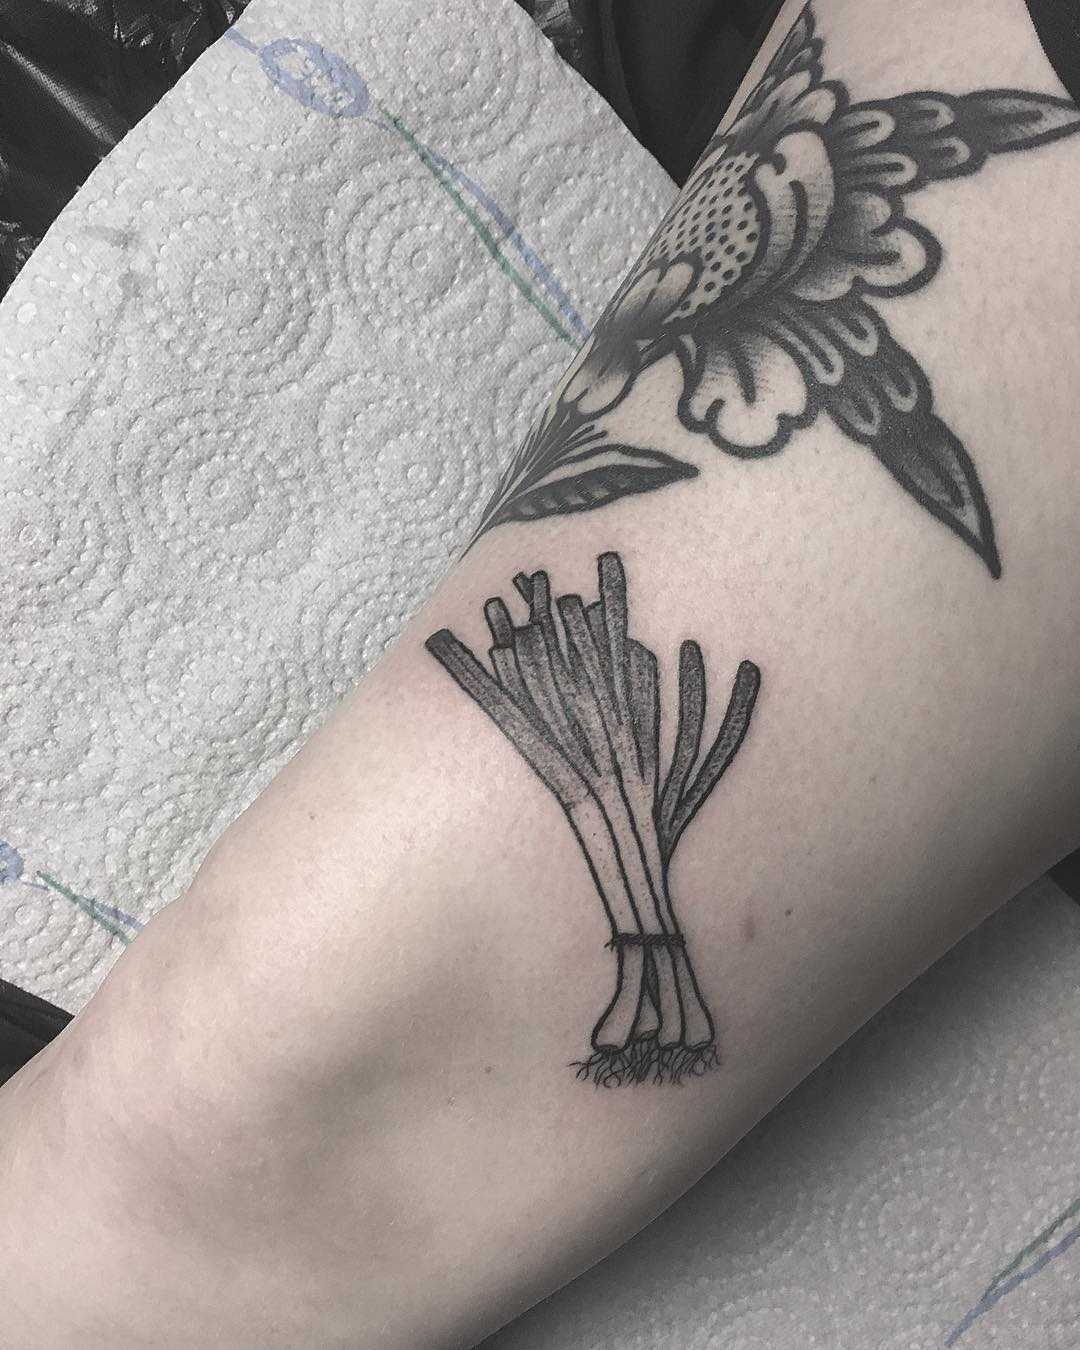 Spring onions tattoo by tattooist Spence @zz tattoo